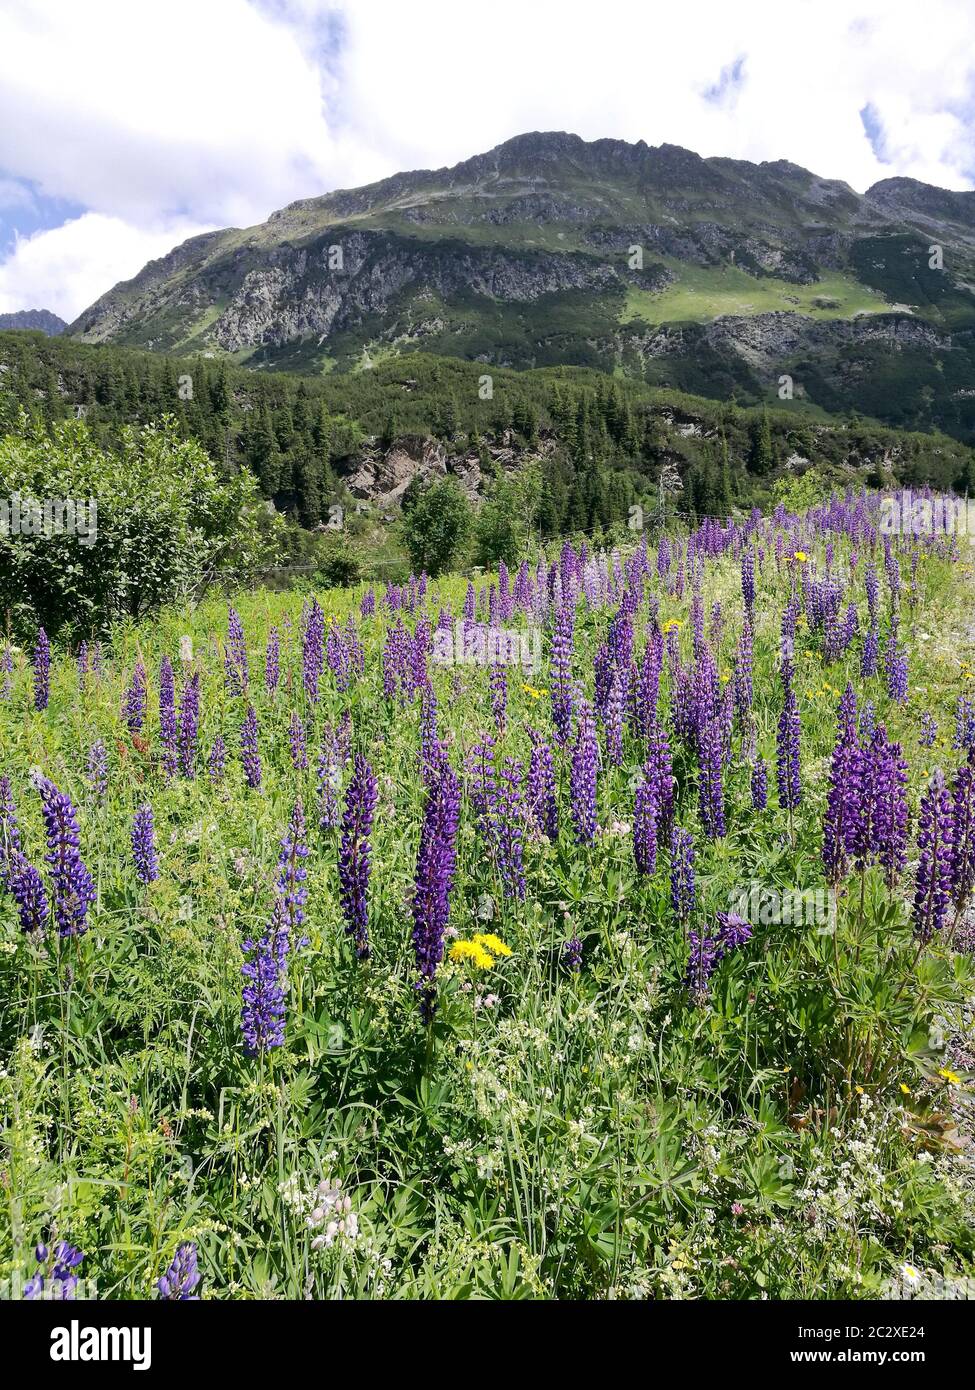 In den Bergen Tirols blau blaue Lupinen. Im Vordergrund die Blumen und im Hintergrund ein Berg. Blaue Lupinen blühen in den Tiroler Bergen. In Th Stockfoto